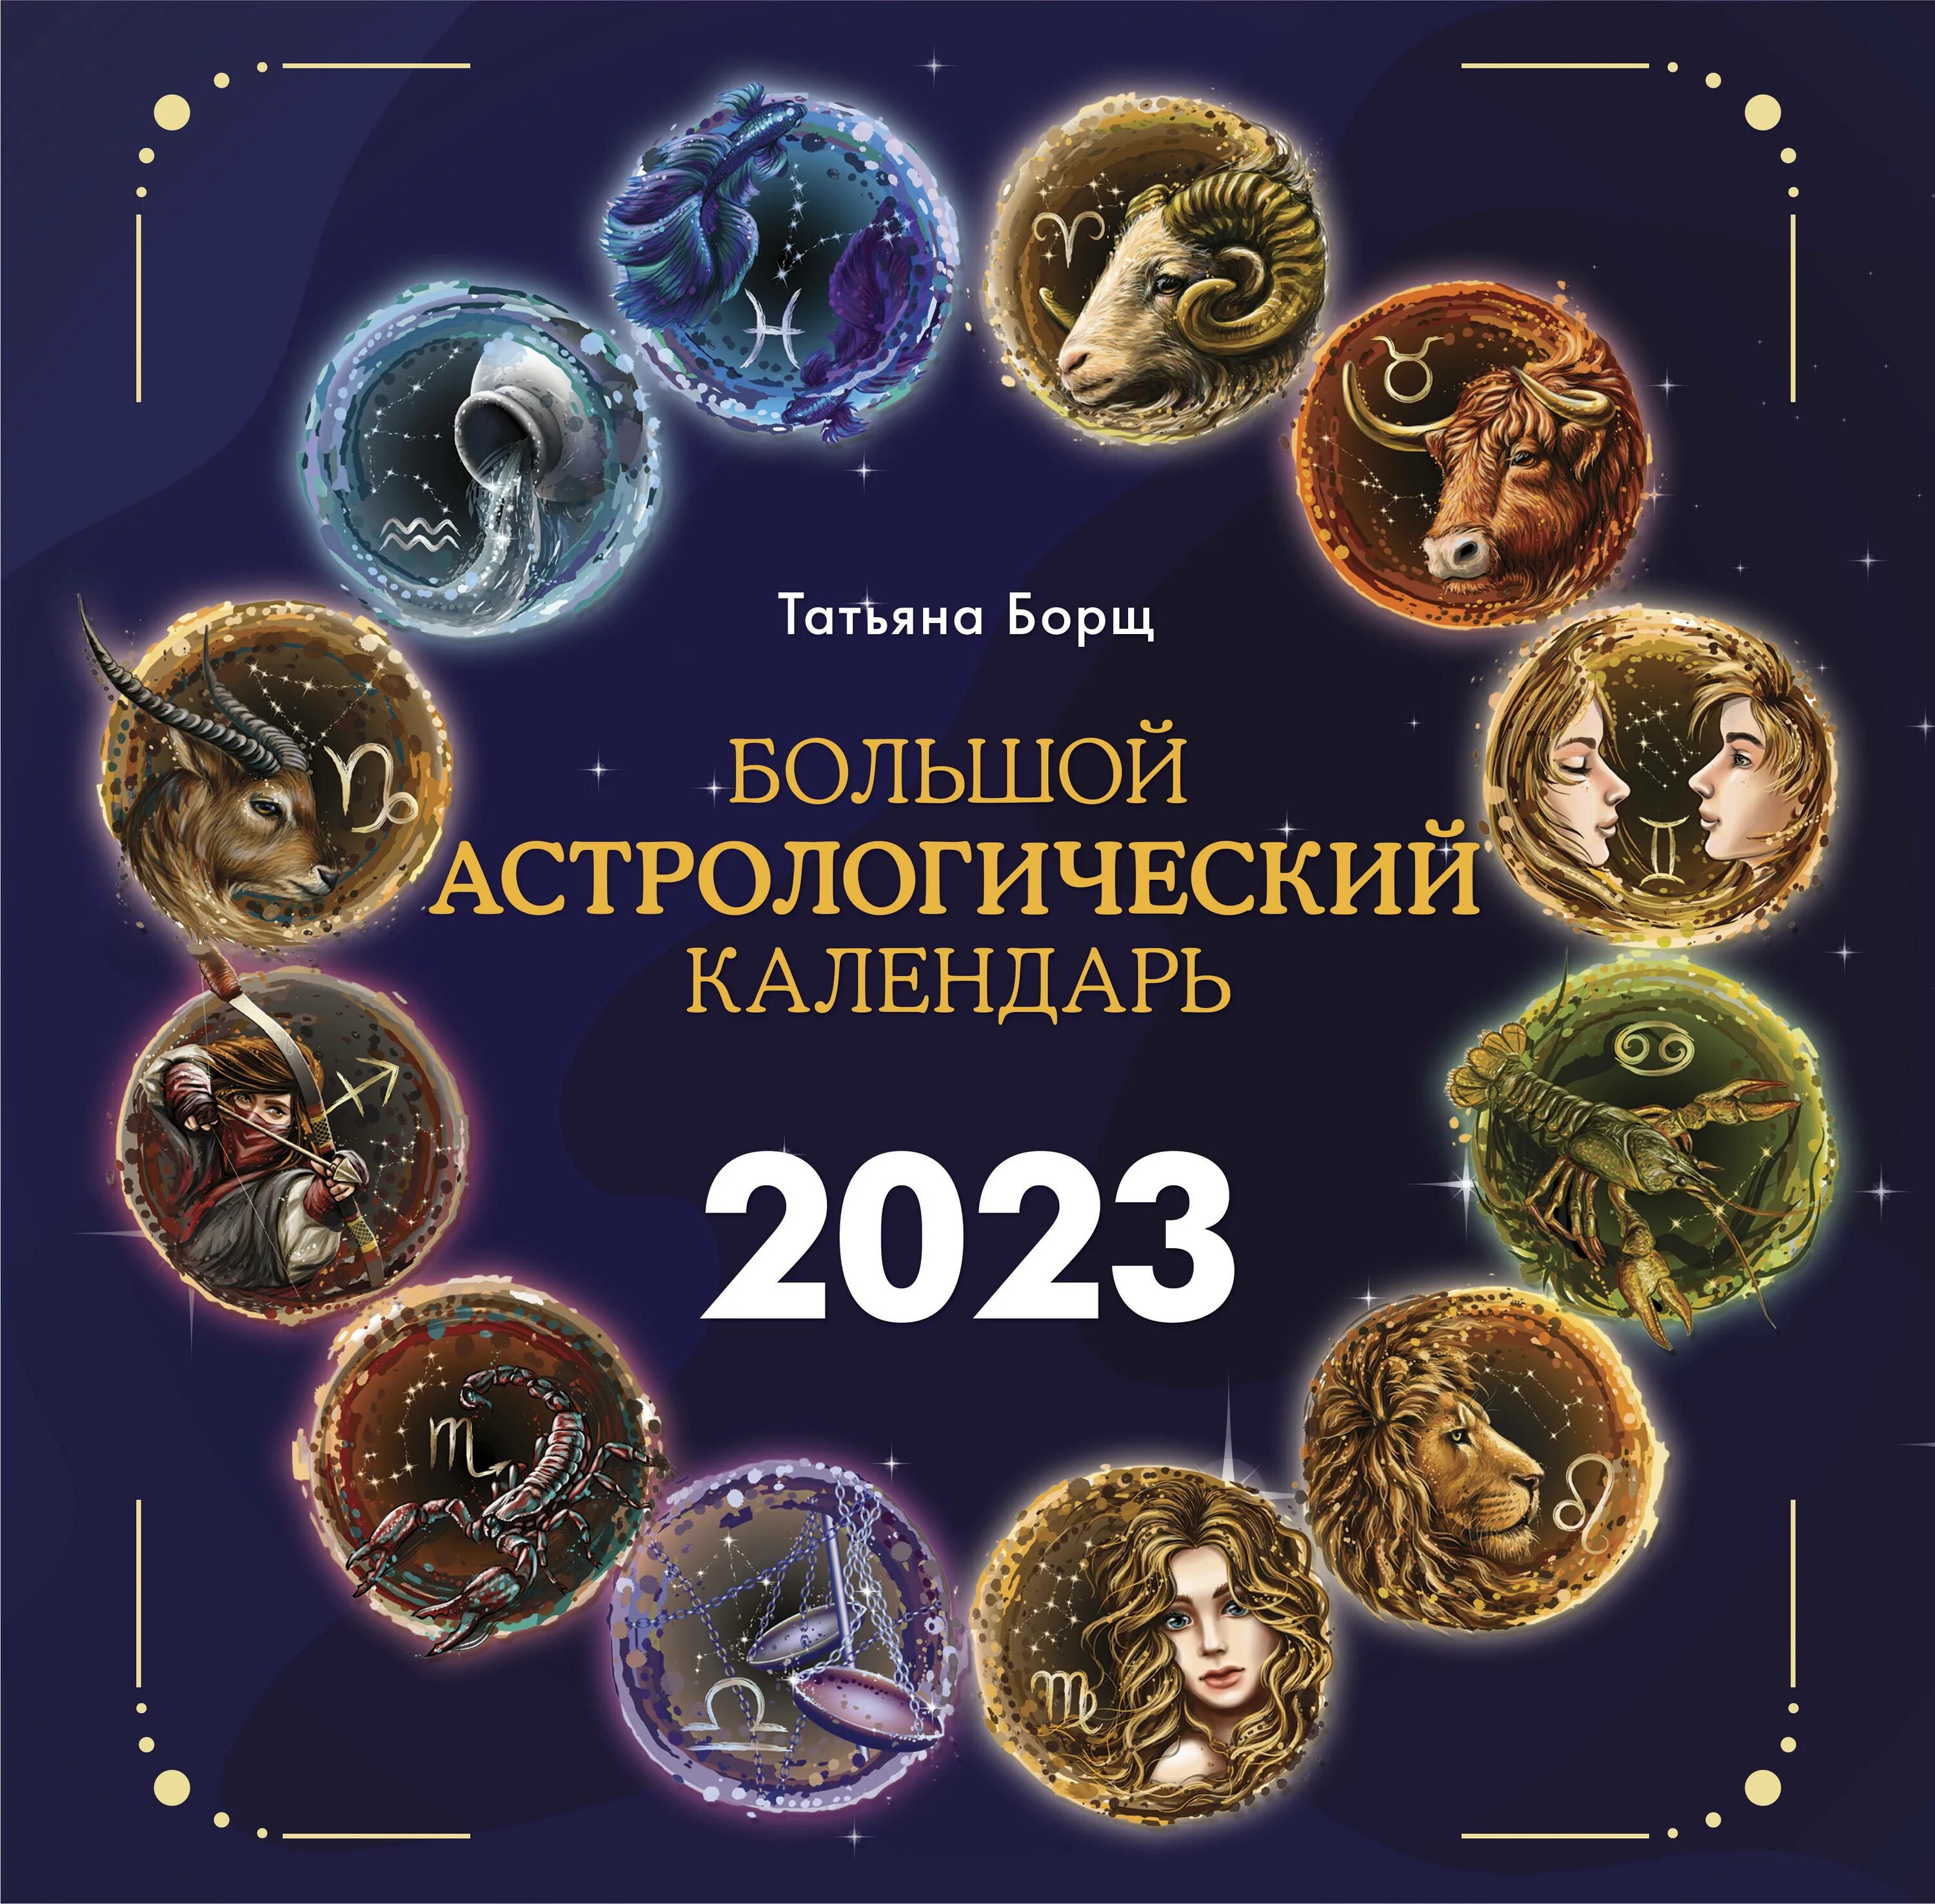 Астрологический календарь на 2023. Астрологический календарь на 2023 год. Астрологический календарь Зараева на 2023 год.